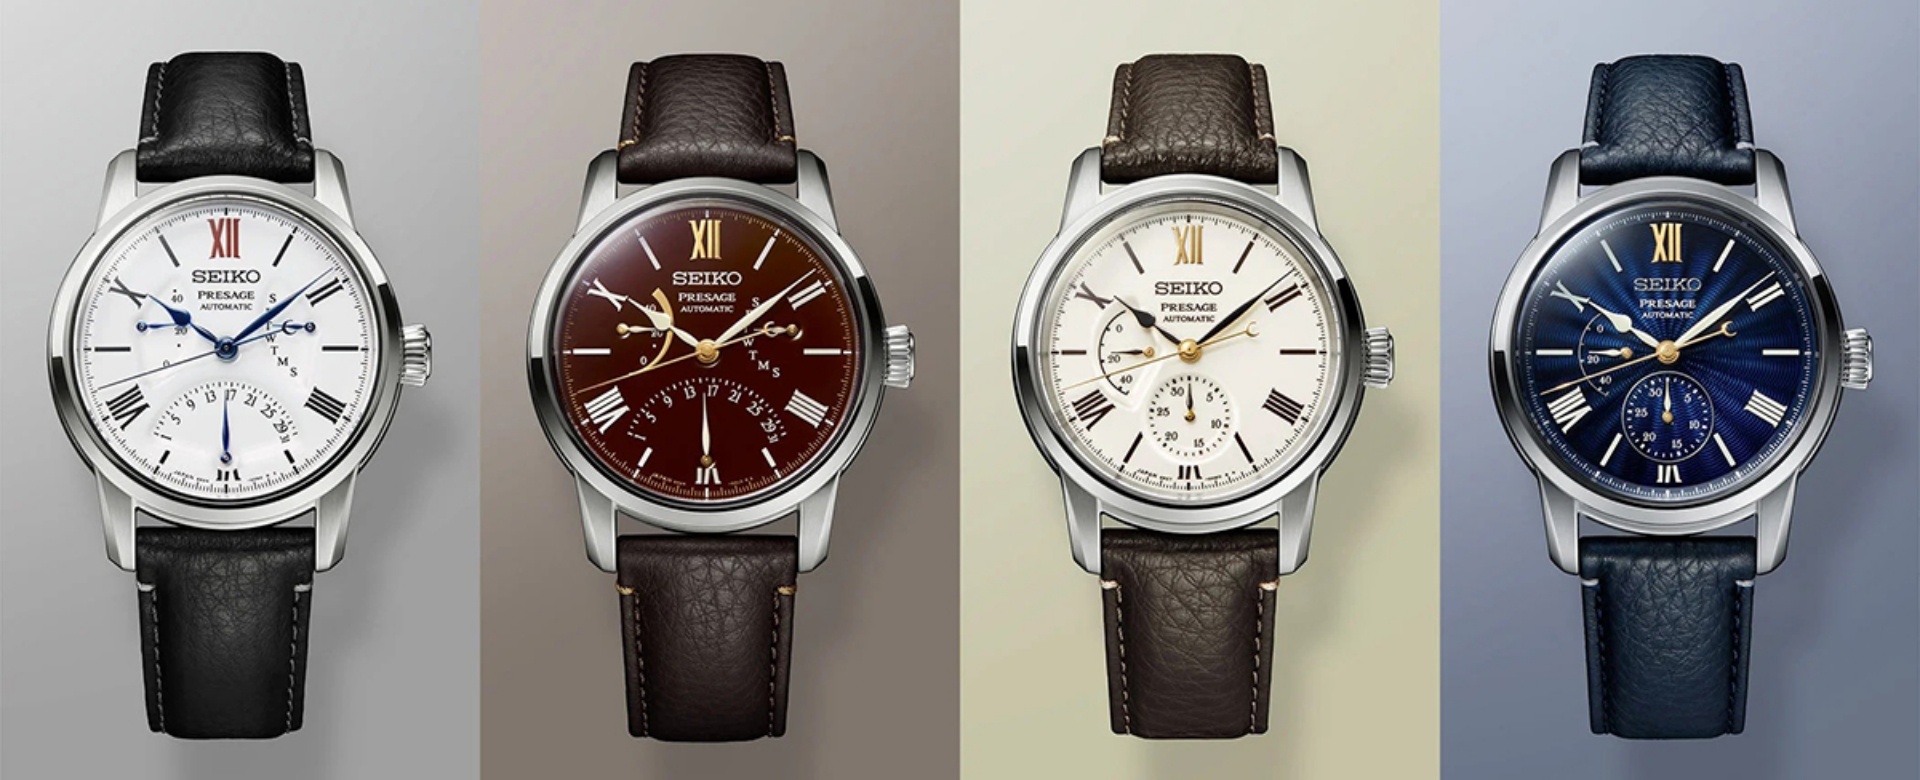 Seiko kỷ niệm 110 năm sản xuất đồng hồ với Presage Craftsmanship Series